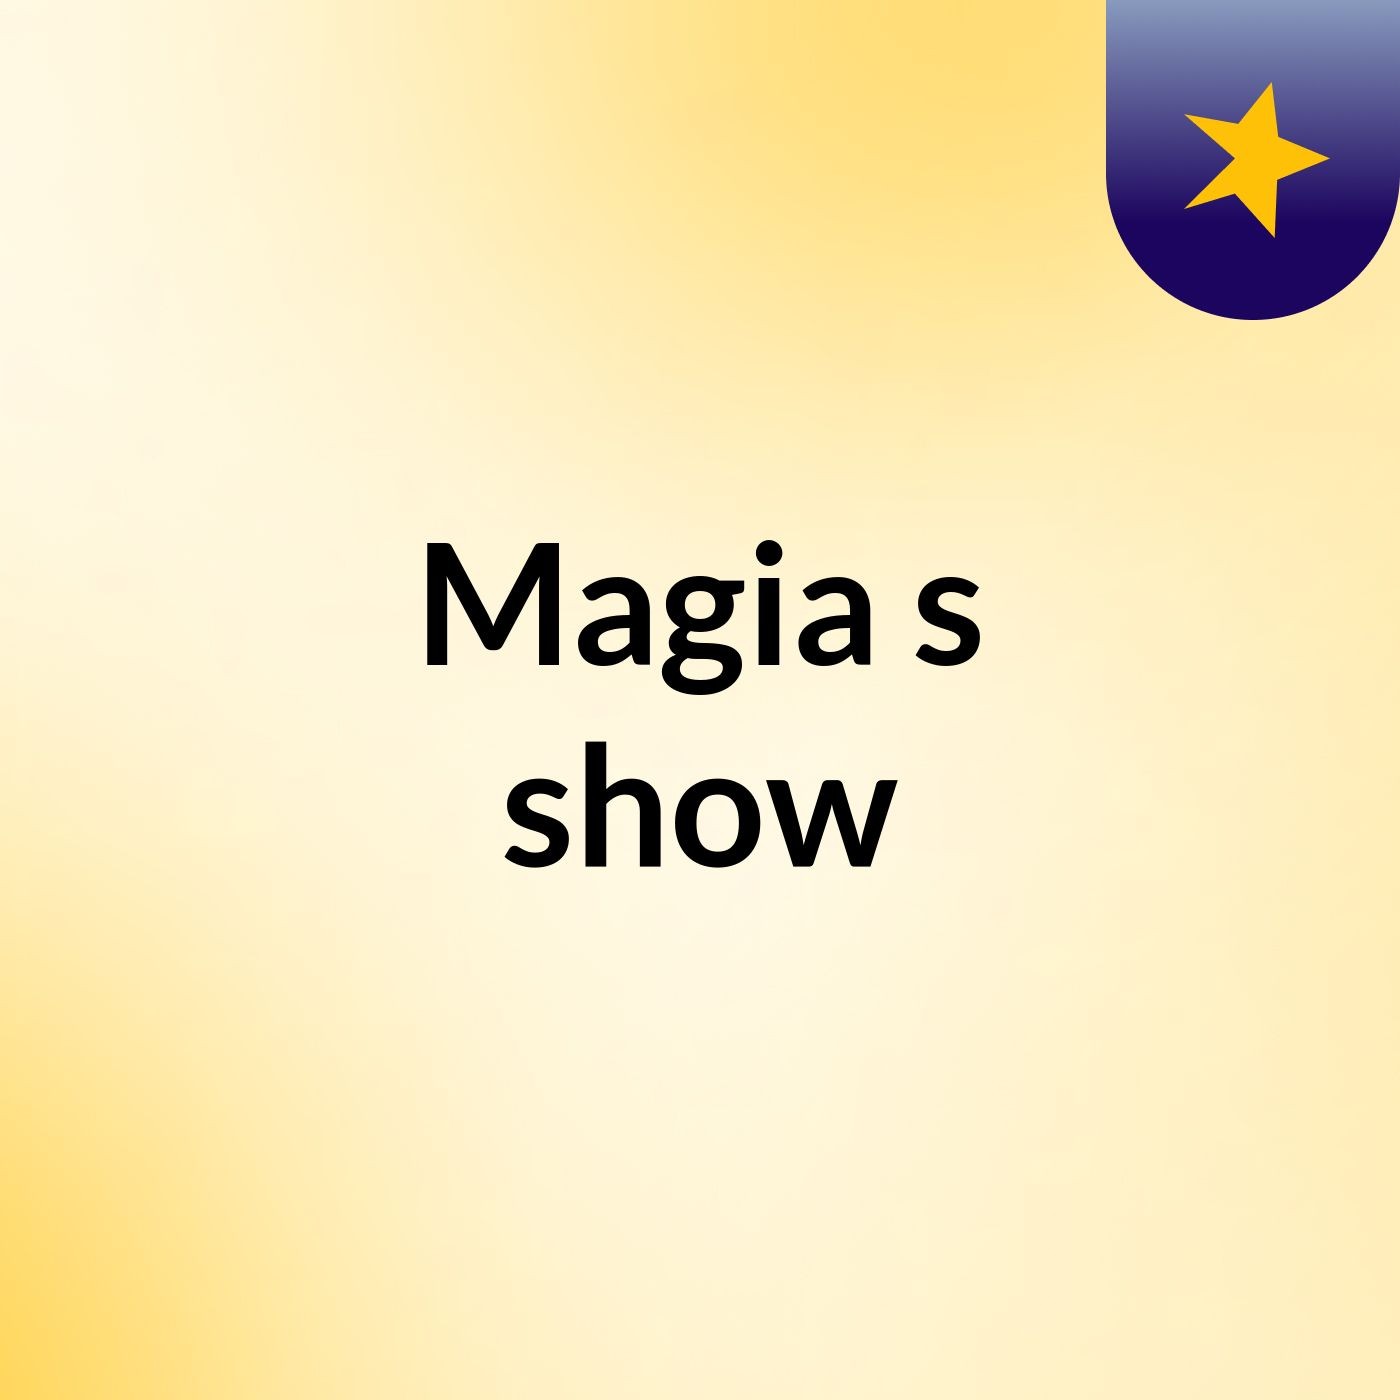 Magia's show